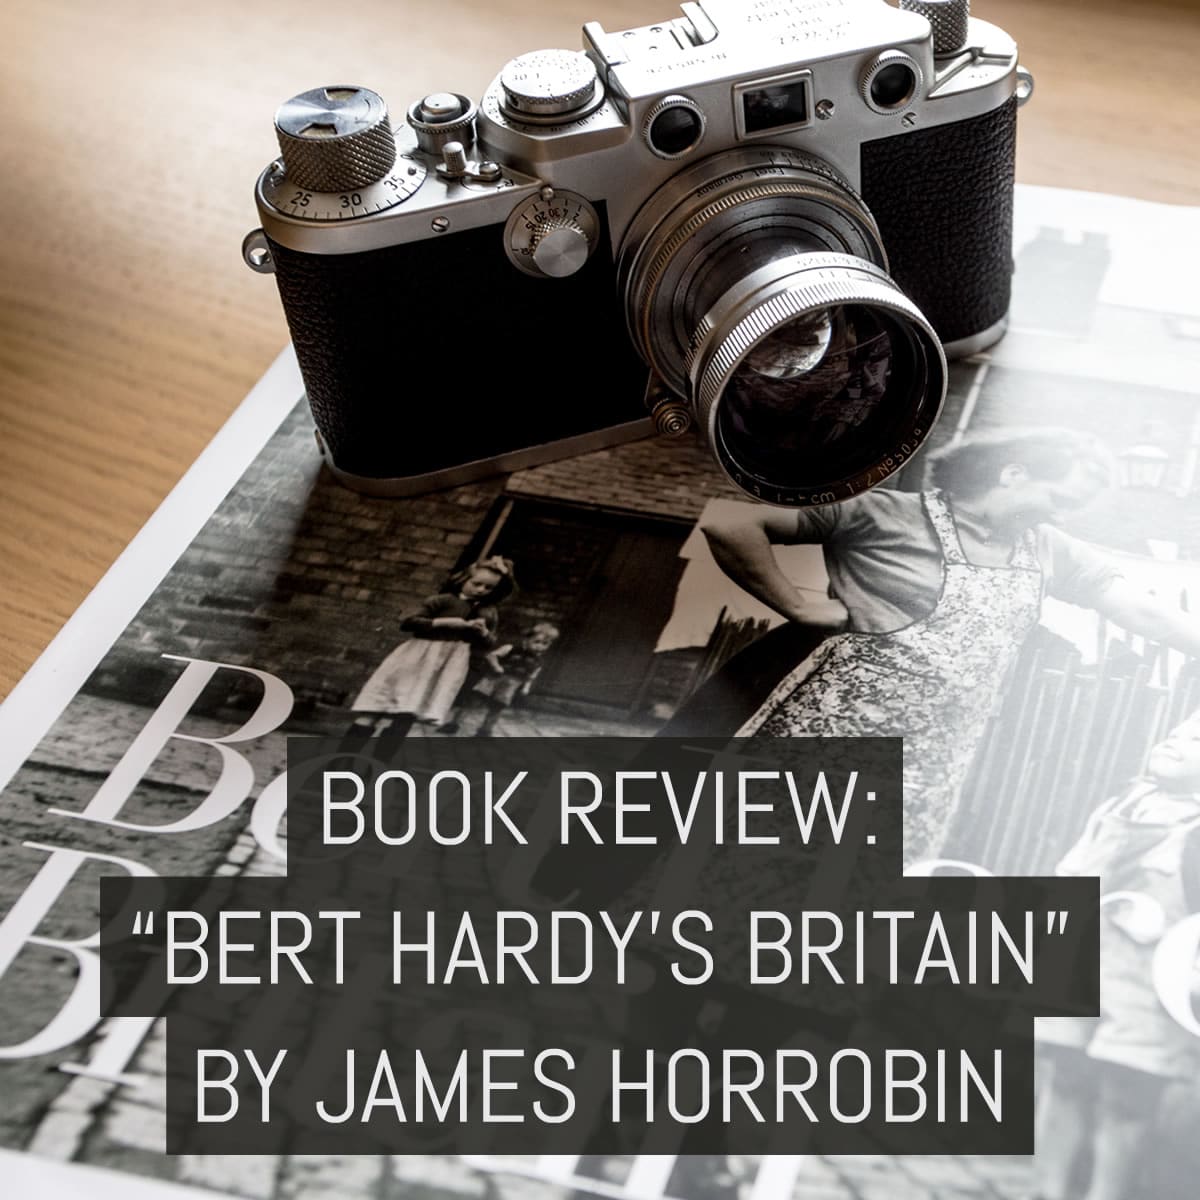 Book review: “Bert Hardy’s Britain”